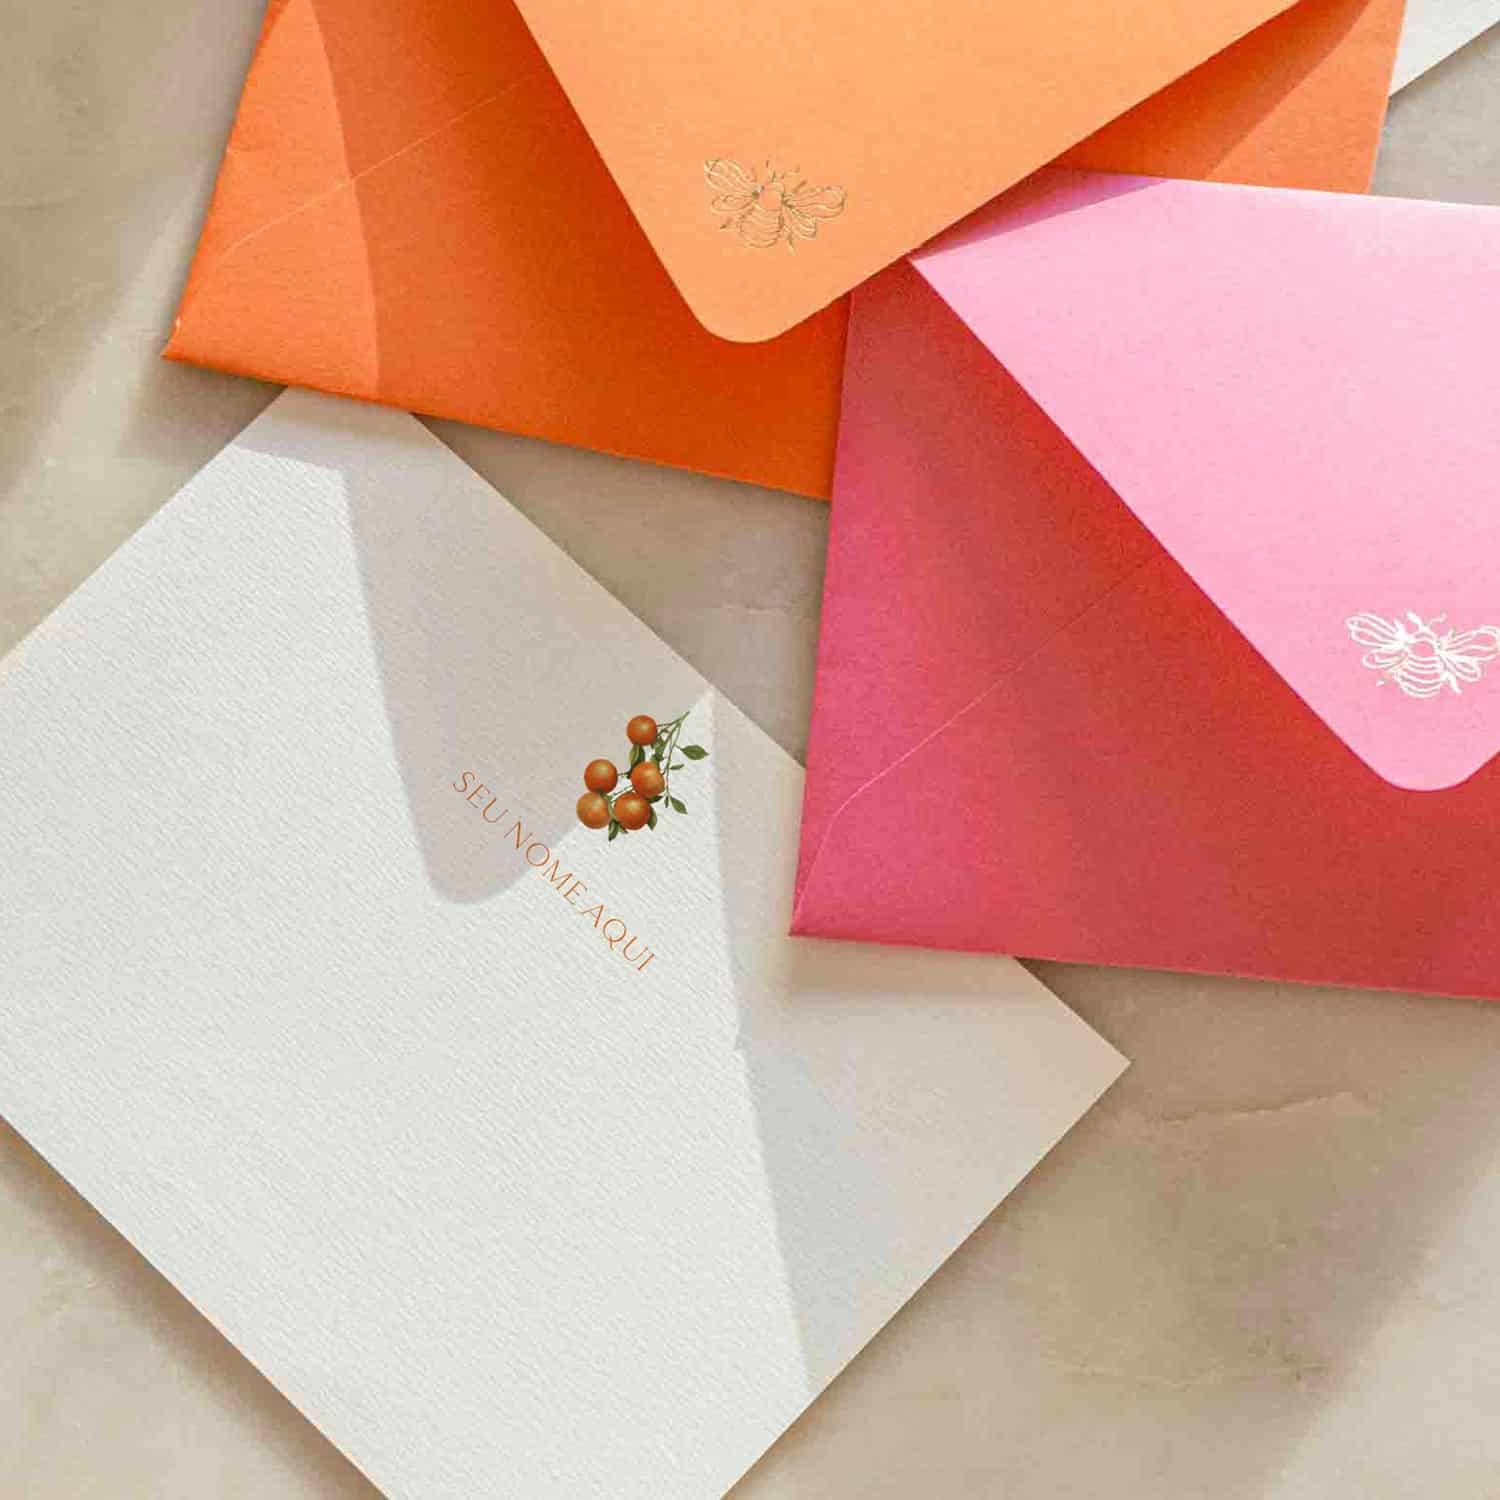 Cartão Social Personalizado com envelopes coloridos na cor laranja e pink da Colmeias Design